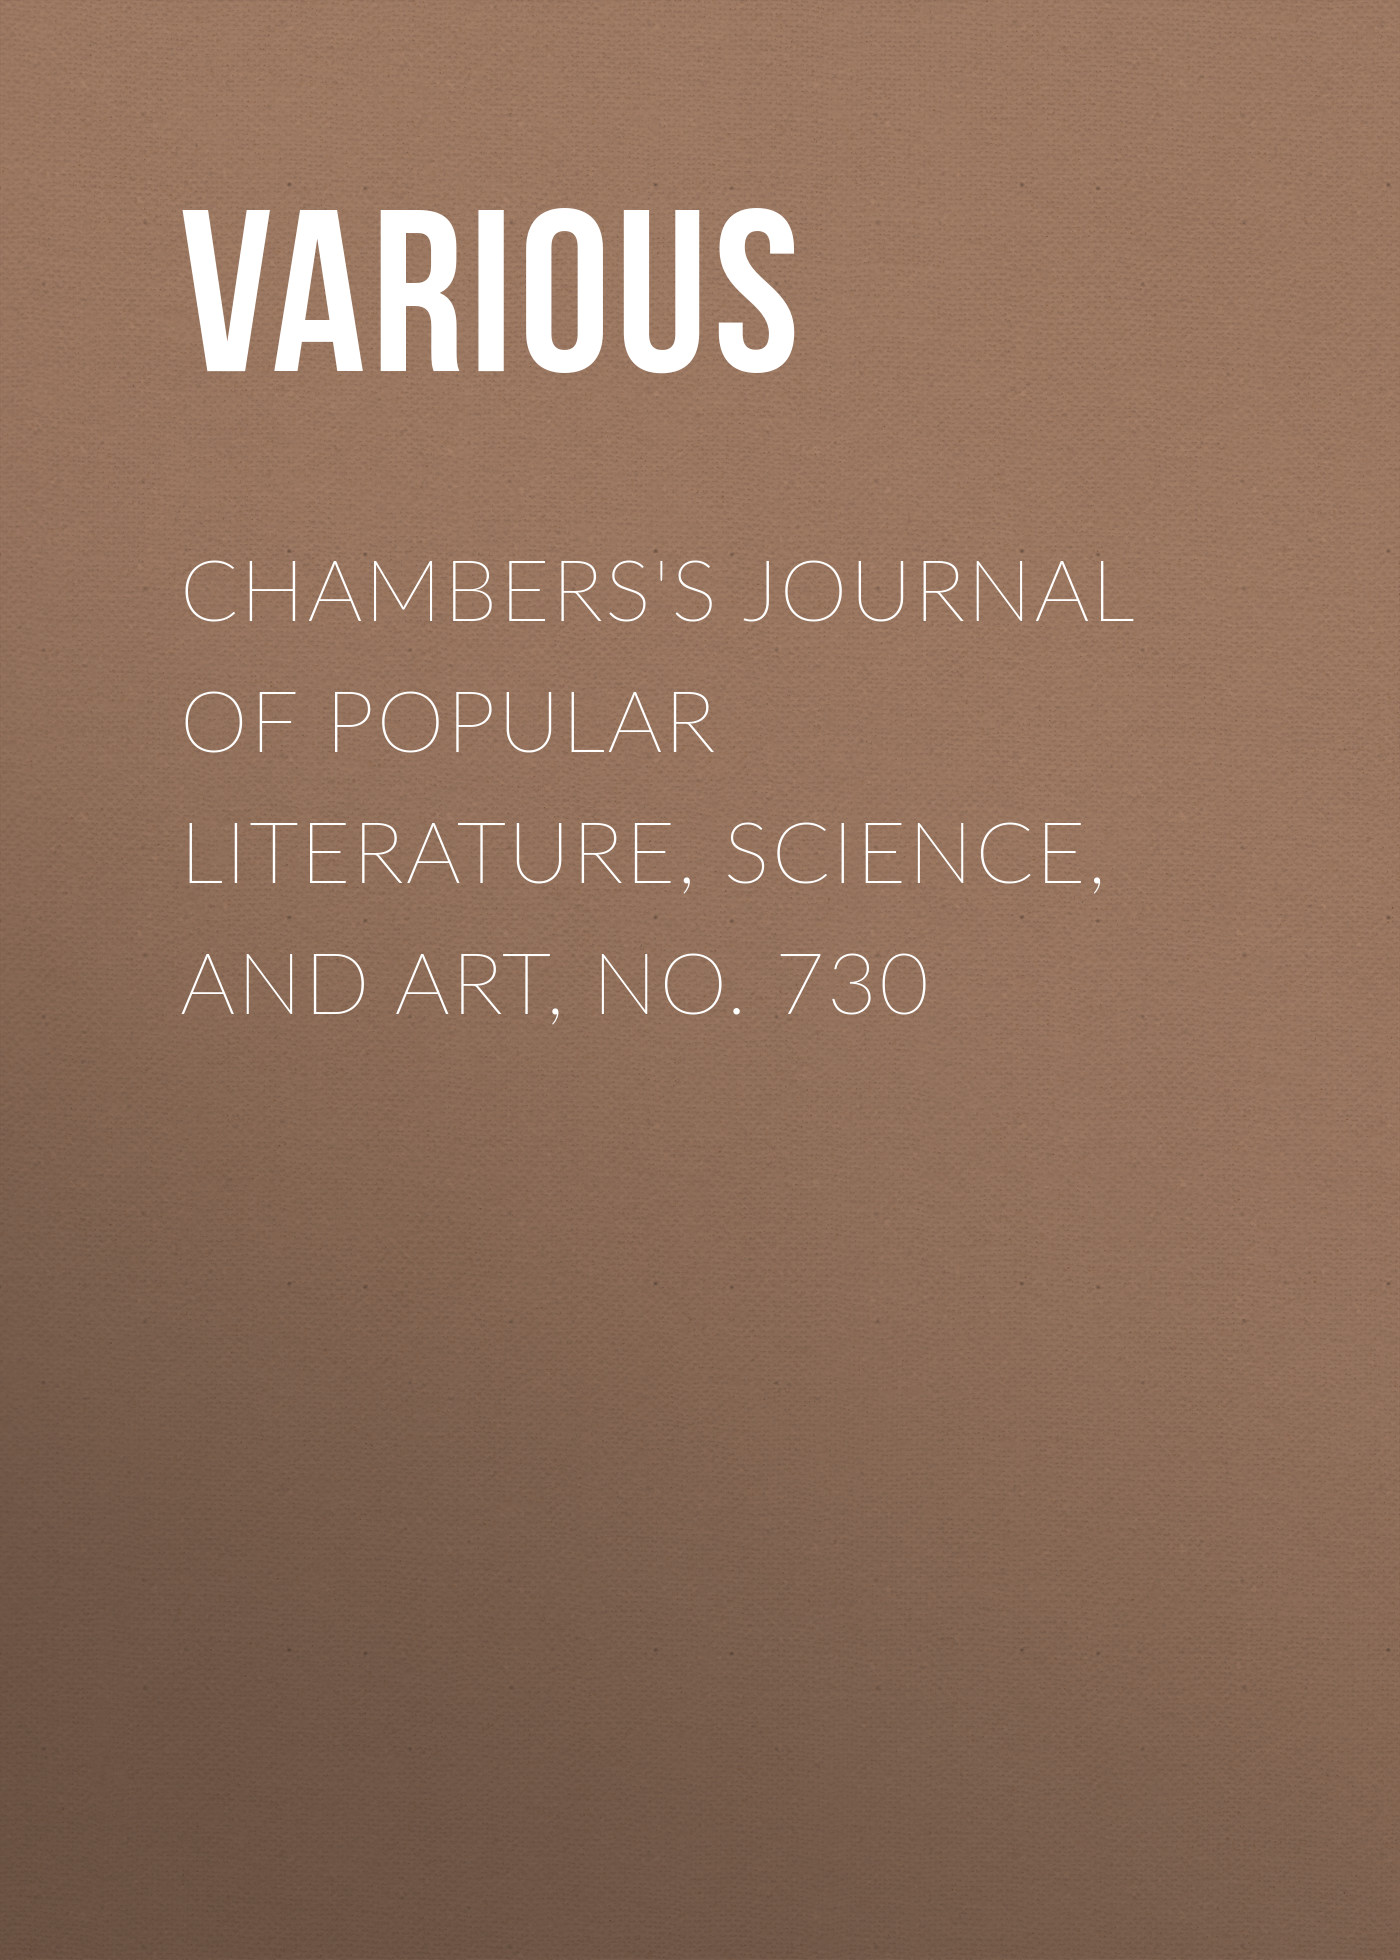 Книга Chambers's Journal of Popular Literature, Science, and Art, No. 730 из серии , созданная  Various, может относится к жанру Журналы, Зарубежная образовательная литература. Стоимость электронной книги Chambers's Journal of Popular Literature, Science, and Art, No. 730 с идентификатором 25570047 составляет 0 руб.